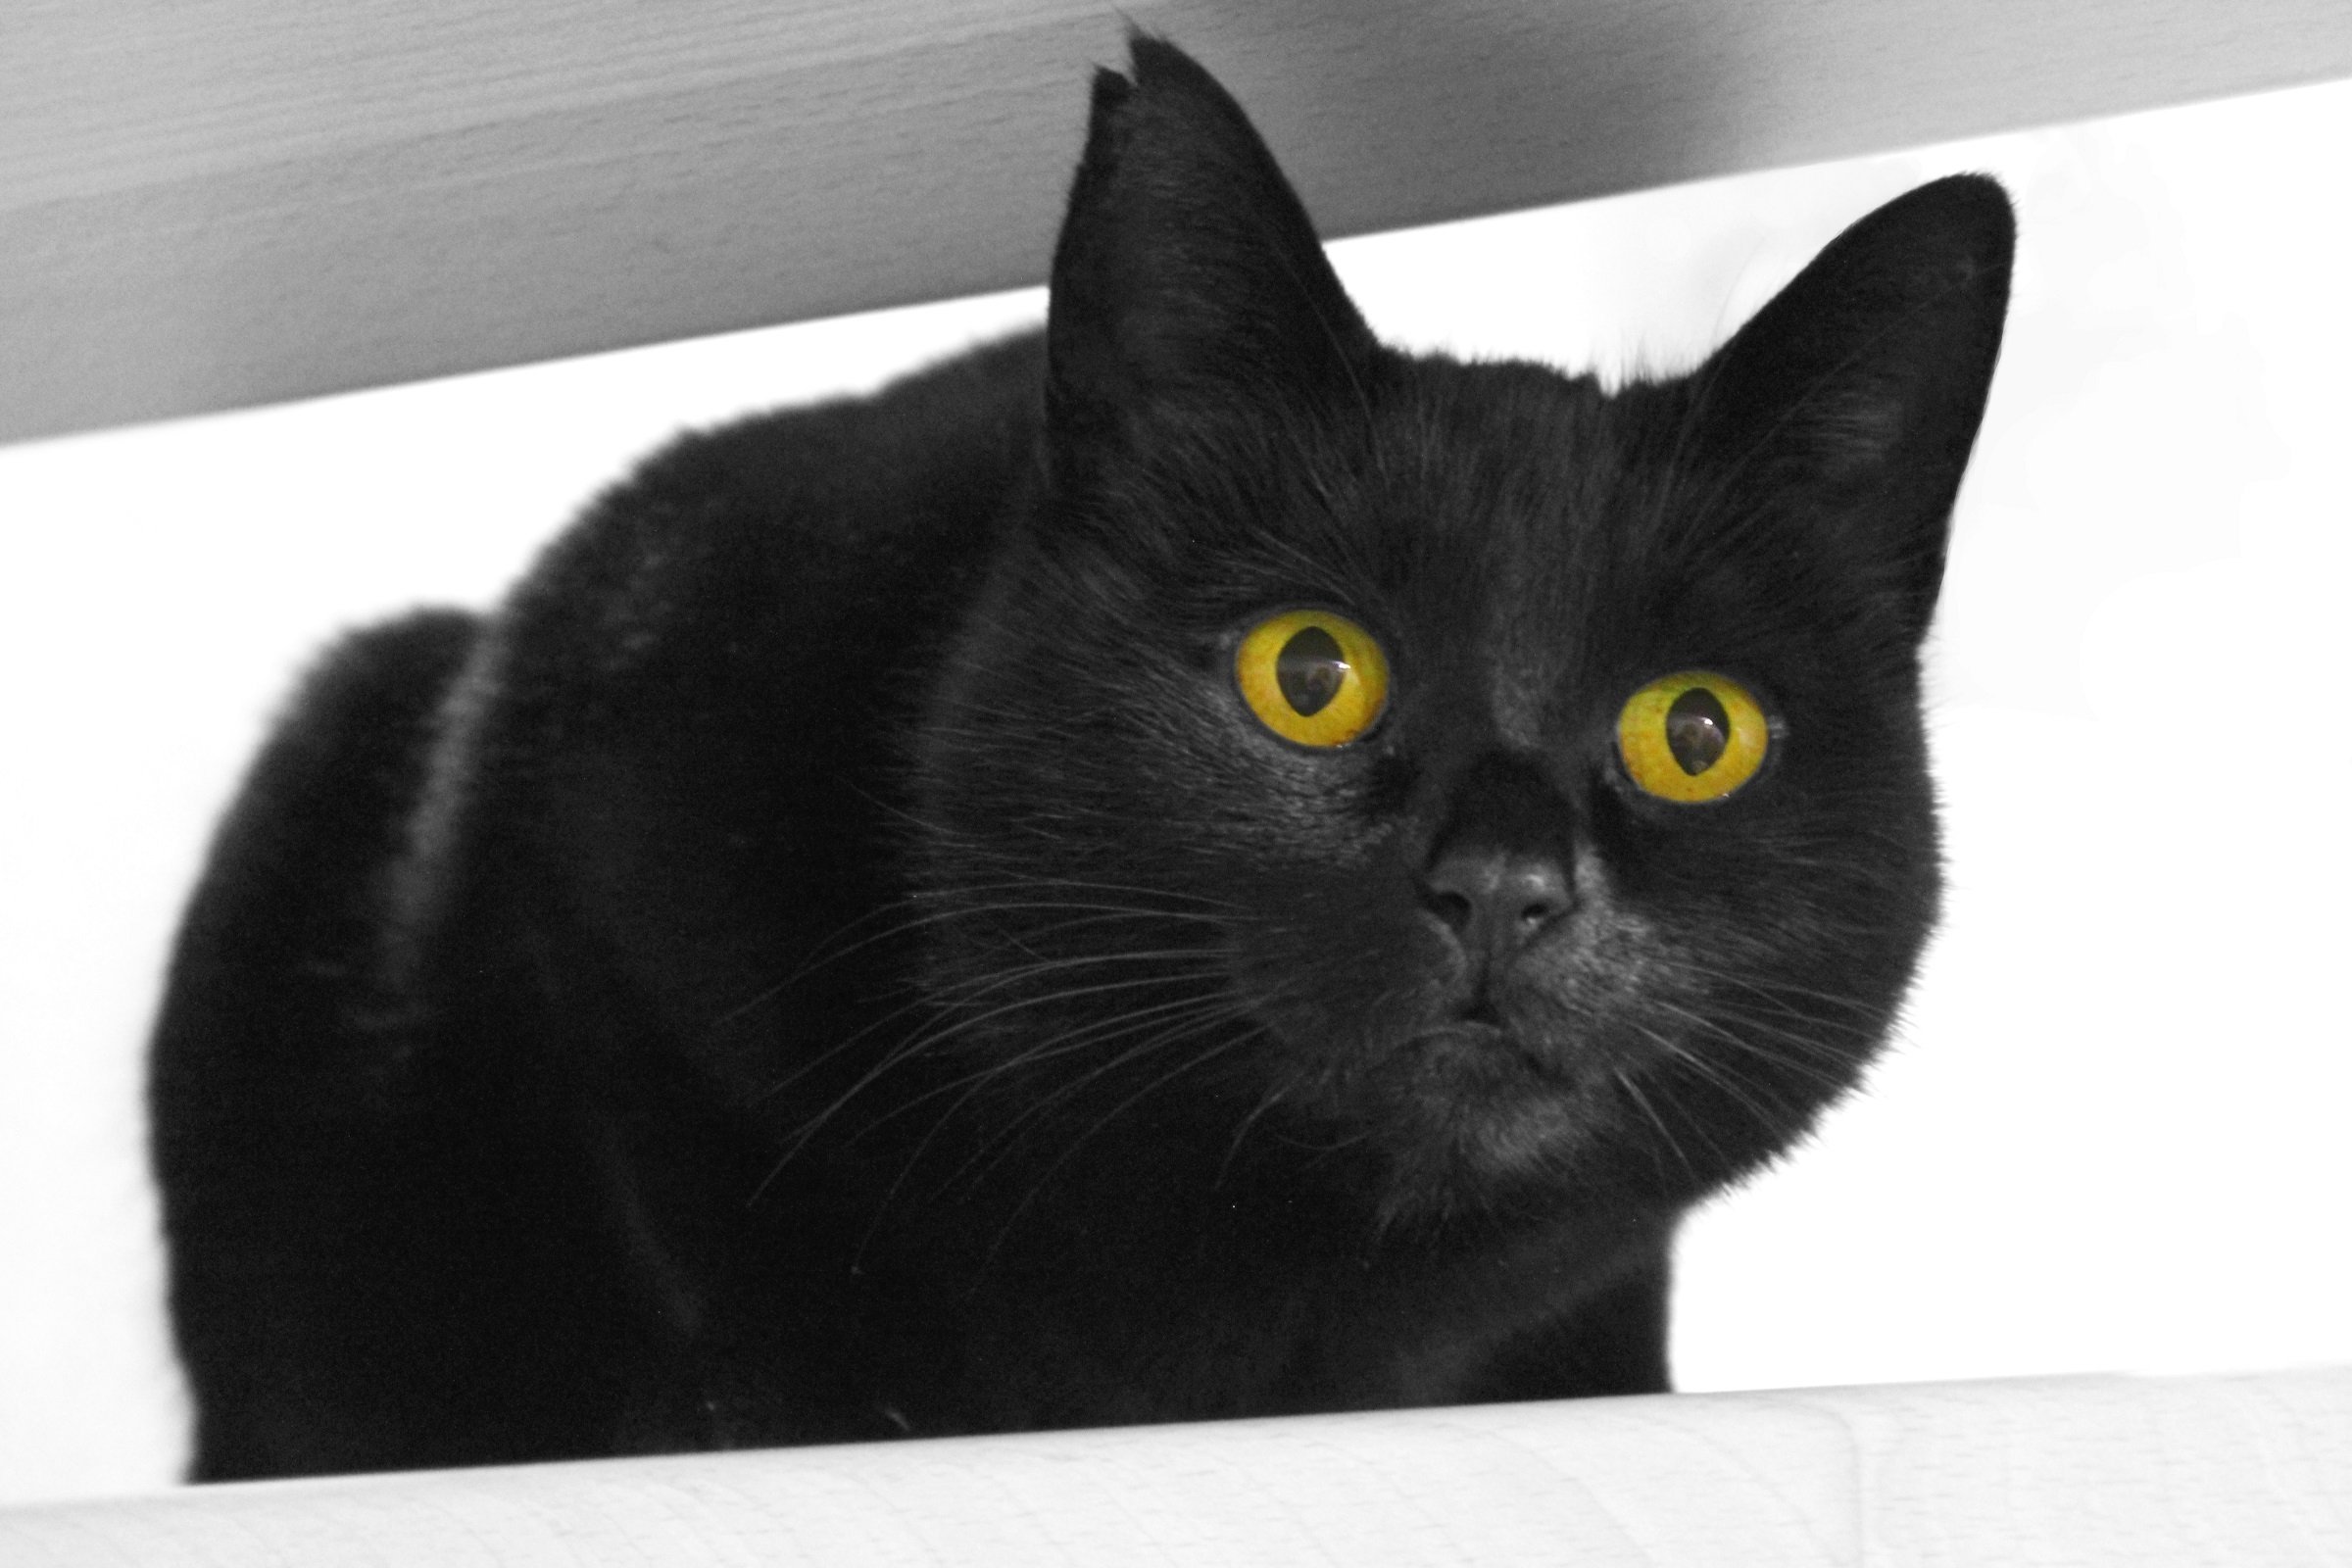 Порода черной кошки с желтыми глазами. Бомбейская кошка. Бомбейская кошка черно белая. Бомбейская кошка пушистая. Американская короткошёрстная кошка черная.